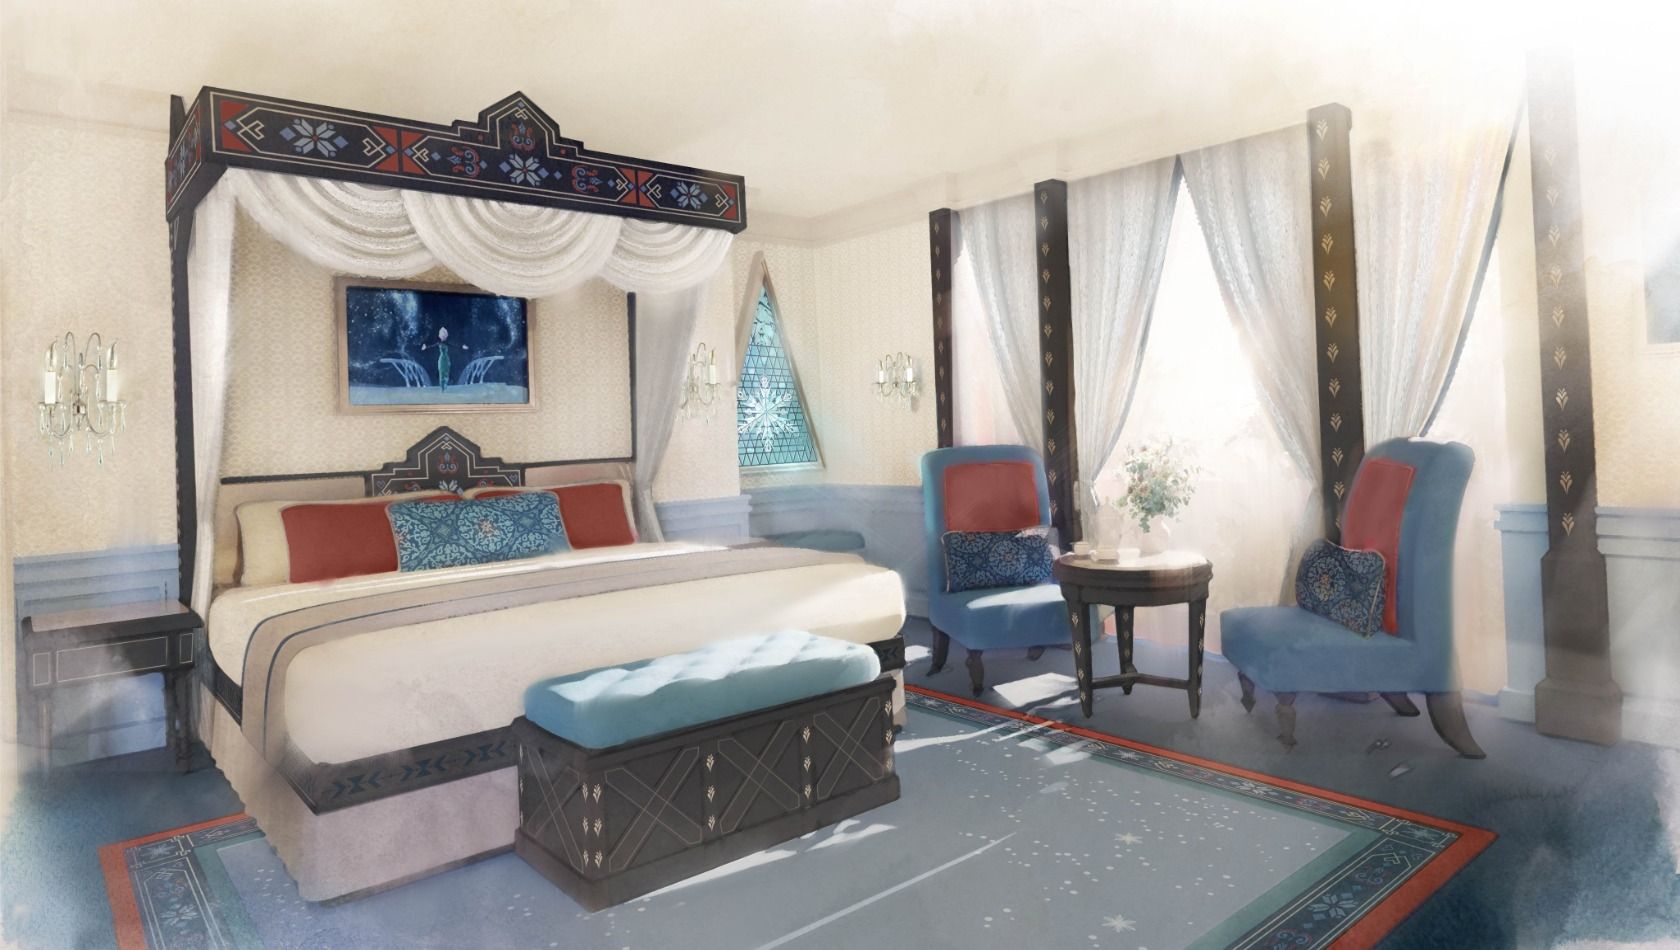 Disneyland Paris Einblick in "Frozen"Zimmer für 2024